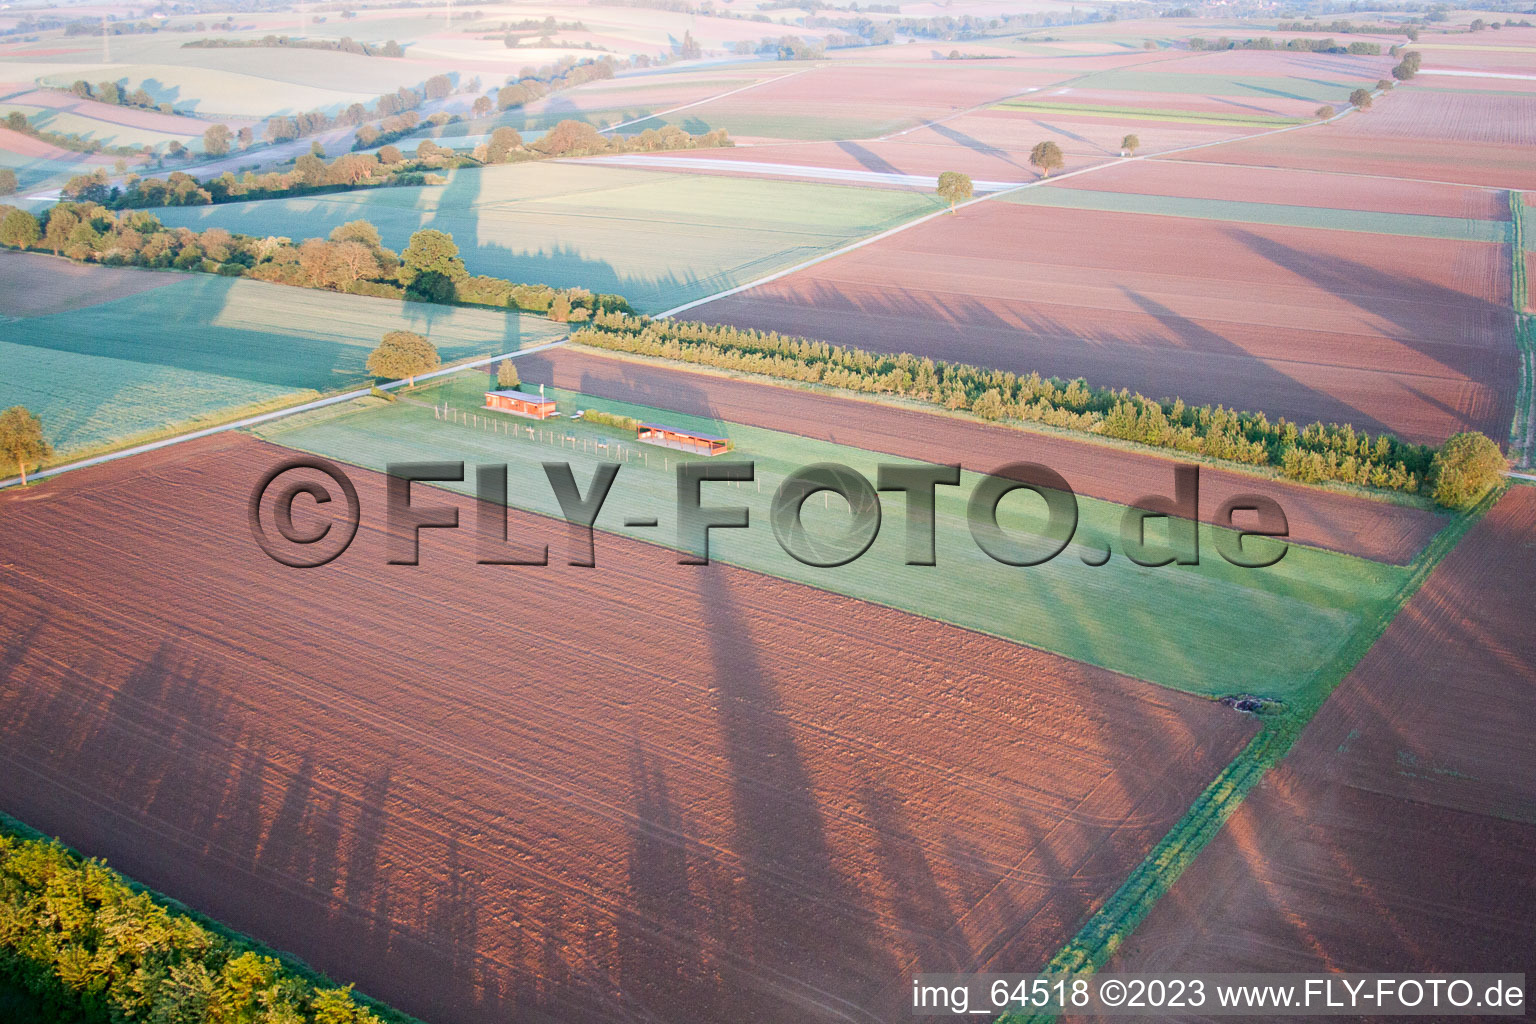 Aérodrome modèle à Freckenfeld dans le département Rhénanie-Palatinat, Allemagne d'en haut